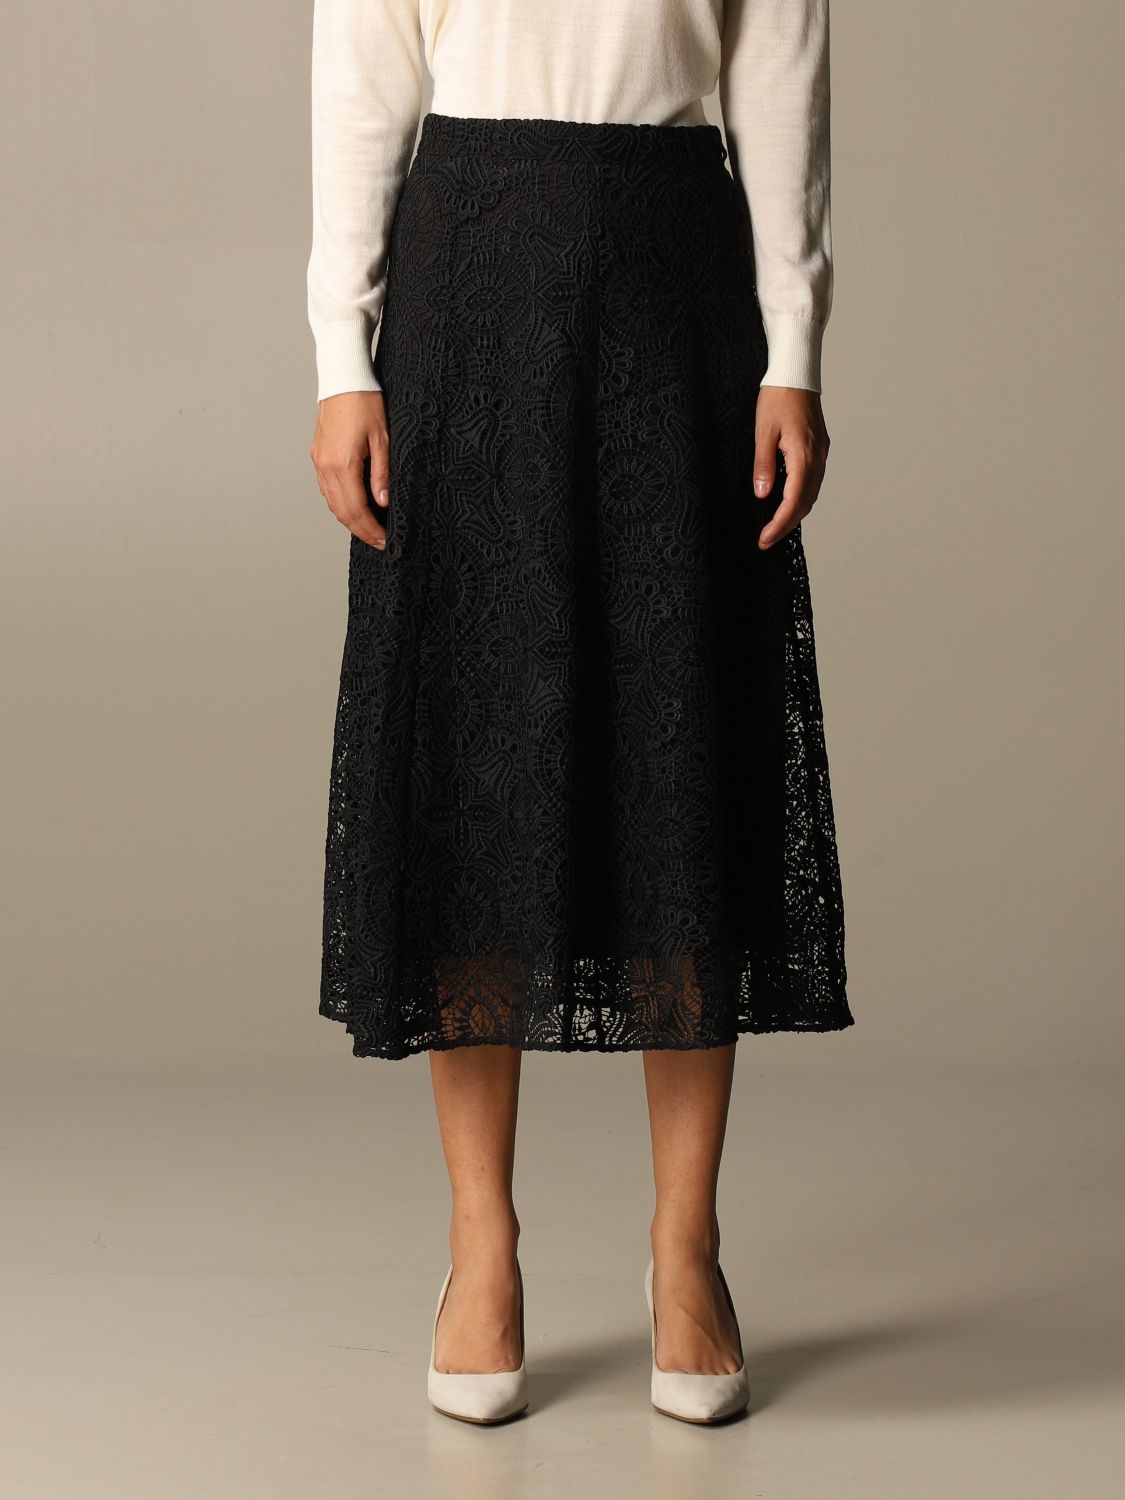 michael kors black skirt